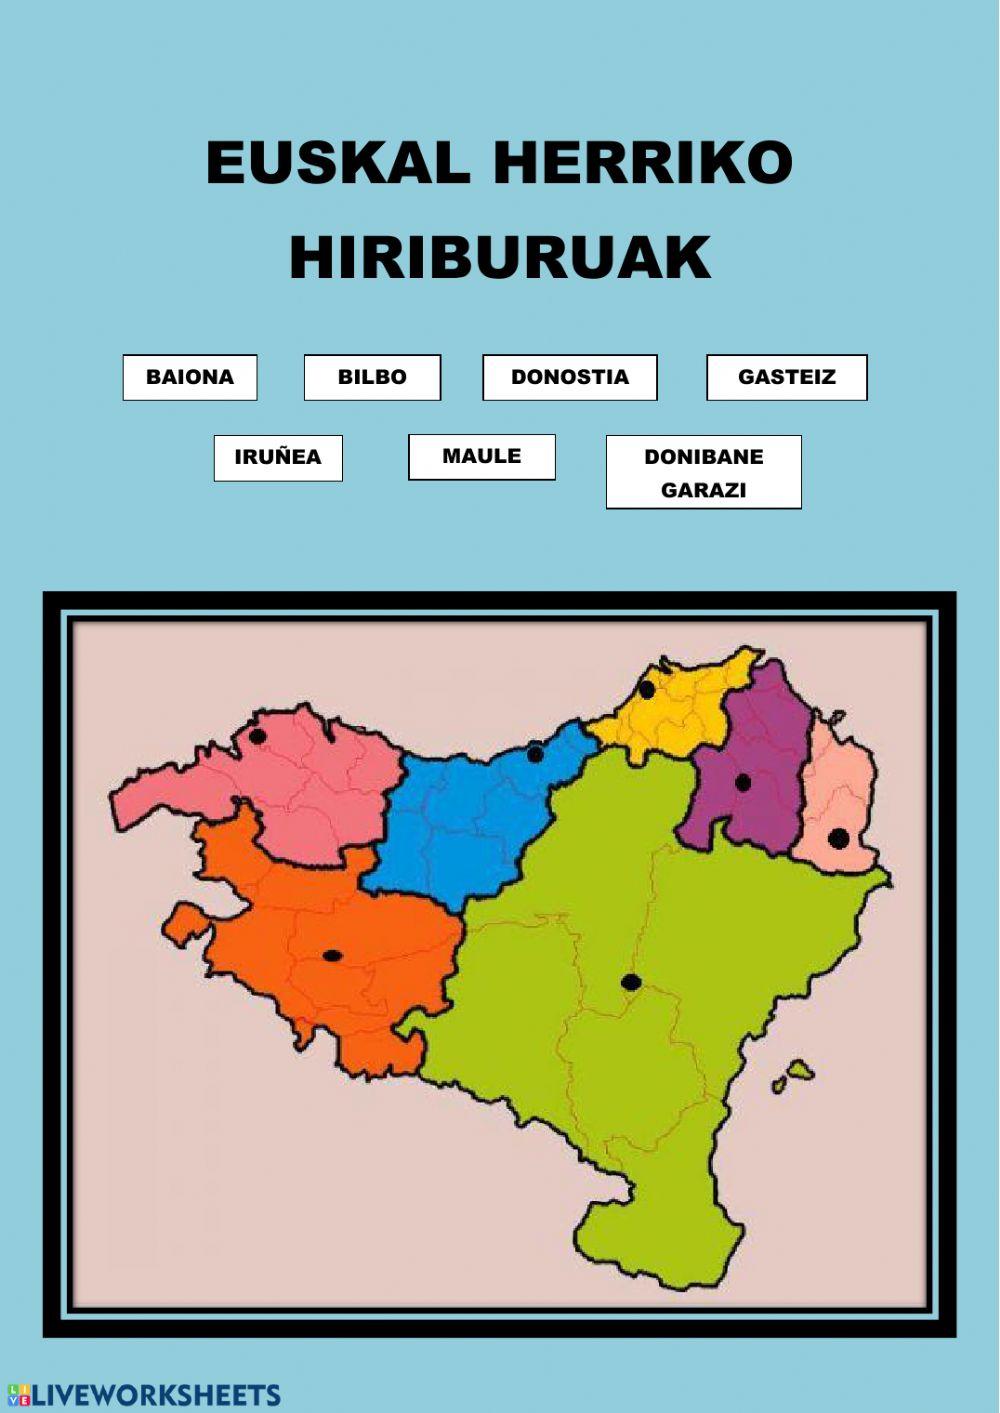 Euskal Herriko hiriburuak